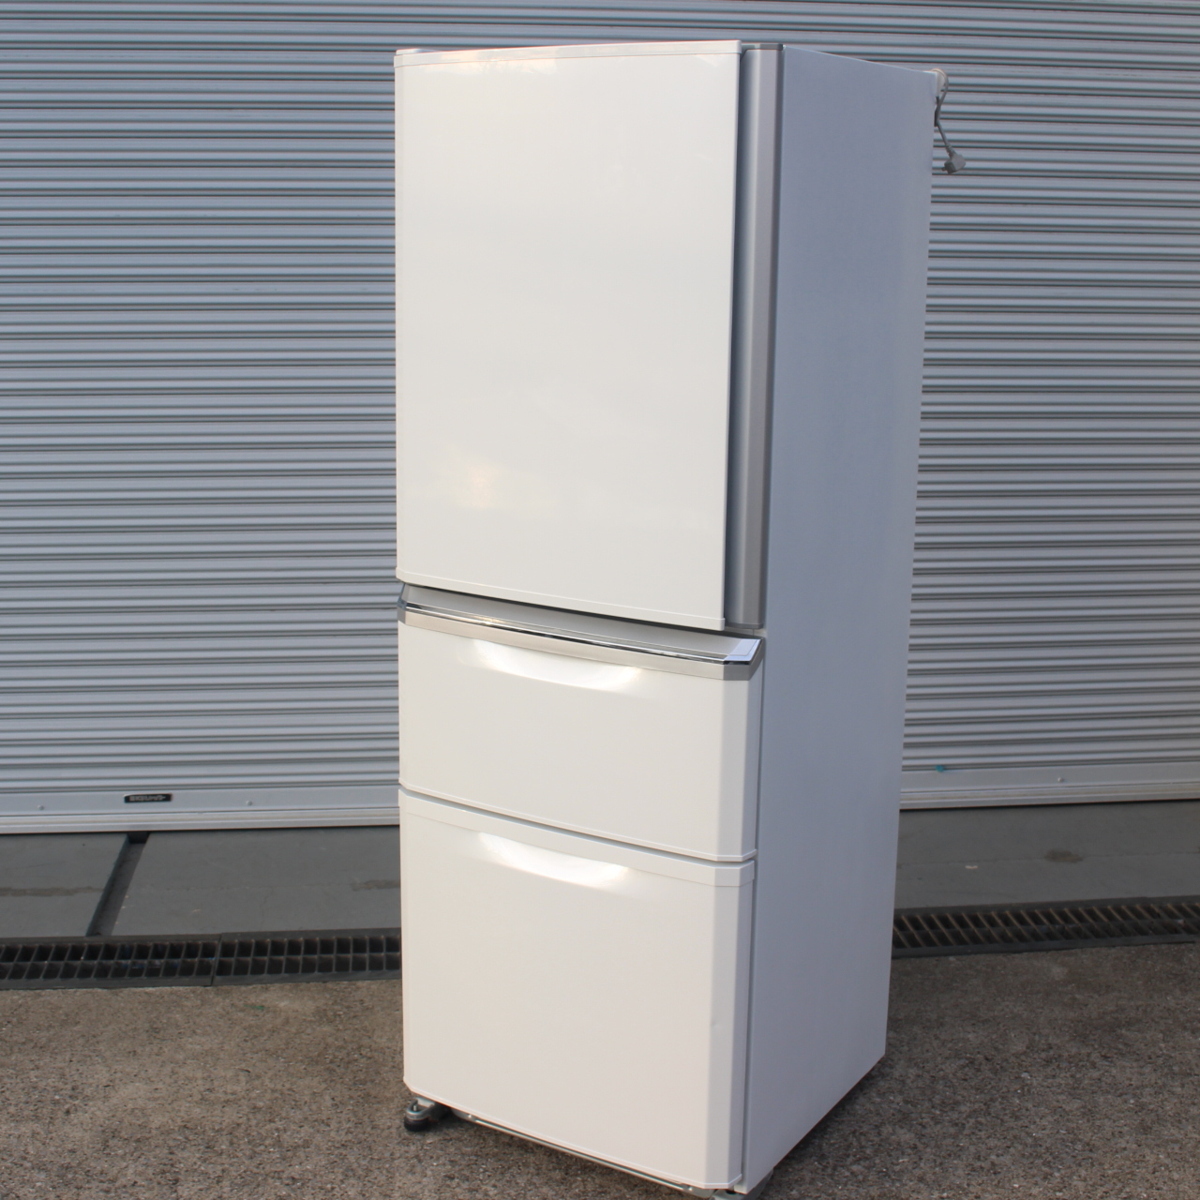 三菱 ノンフロン冷凍冷蔵庫 MR-C34YL 335L 3ドア 大容量 2015年製